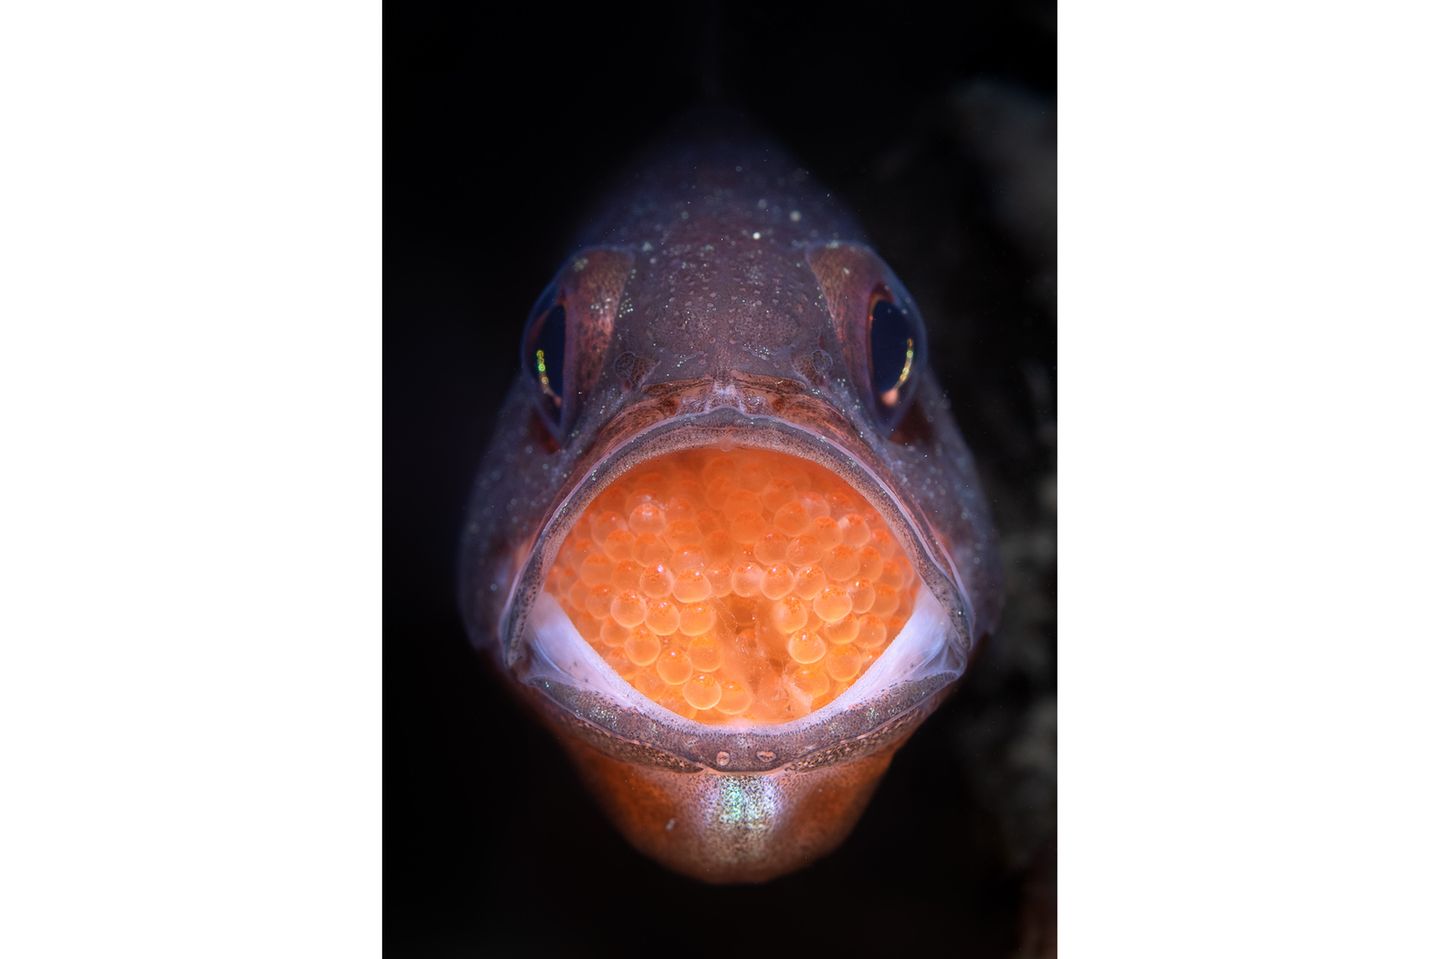 Der männliche Barsch der Art Vincentia novaehollandiae hütet bis zu einen Monat den Laich, den das Weibchen in seinem Maul abgelegt hat. Ein zweiter Platz für das Foto von Talia Greis in der Kategorie "Underwater".